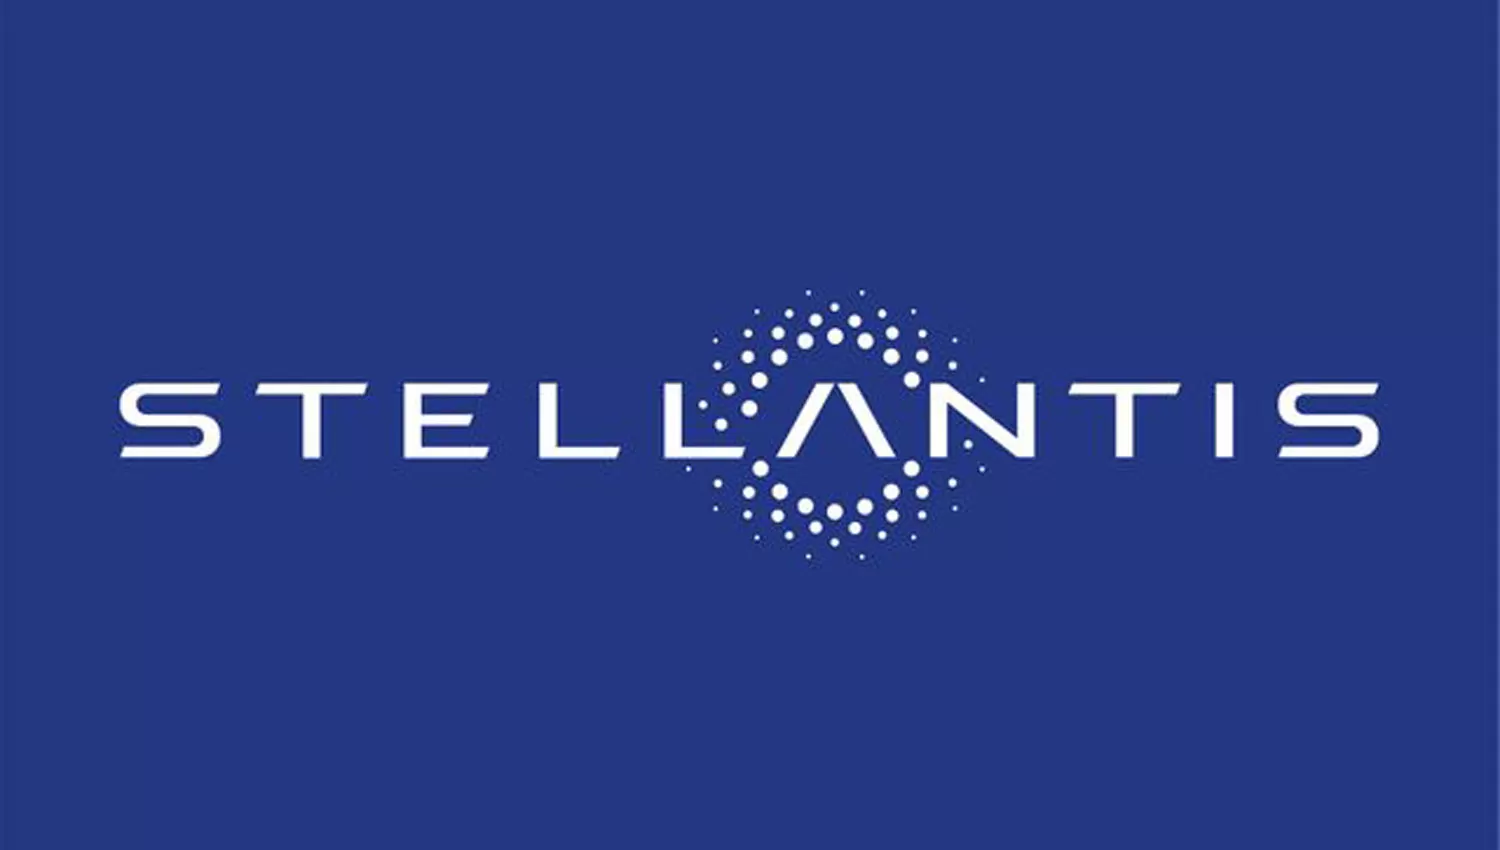 MEGAFUSIÓN. Stellantis tendrá 14 marcas, desde Fiat, Jeep, Dodge, Peugeot, Citroën y hasta Maserati